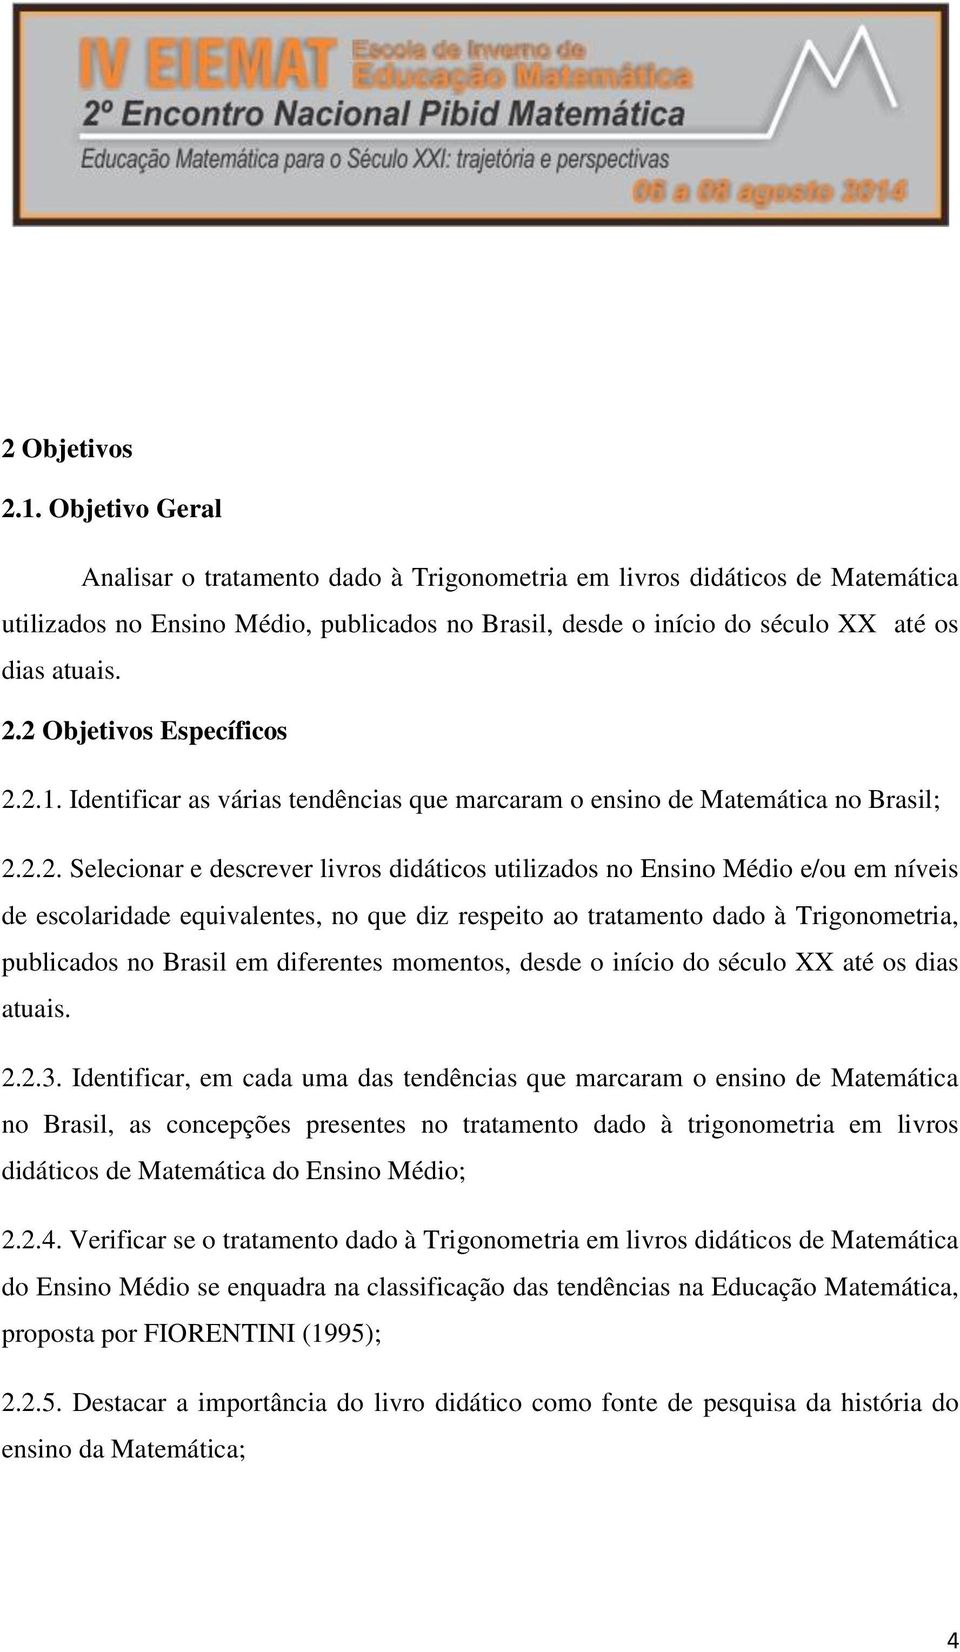 2 Objetivos Específicos 2.2.1. Identificar as várias tendências que marcaram o ensino de Matemática no Brasil; 2.2.2. Selecionar e descrever livros didáticos utilizados no Ensino Médio e/ou em níveis